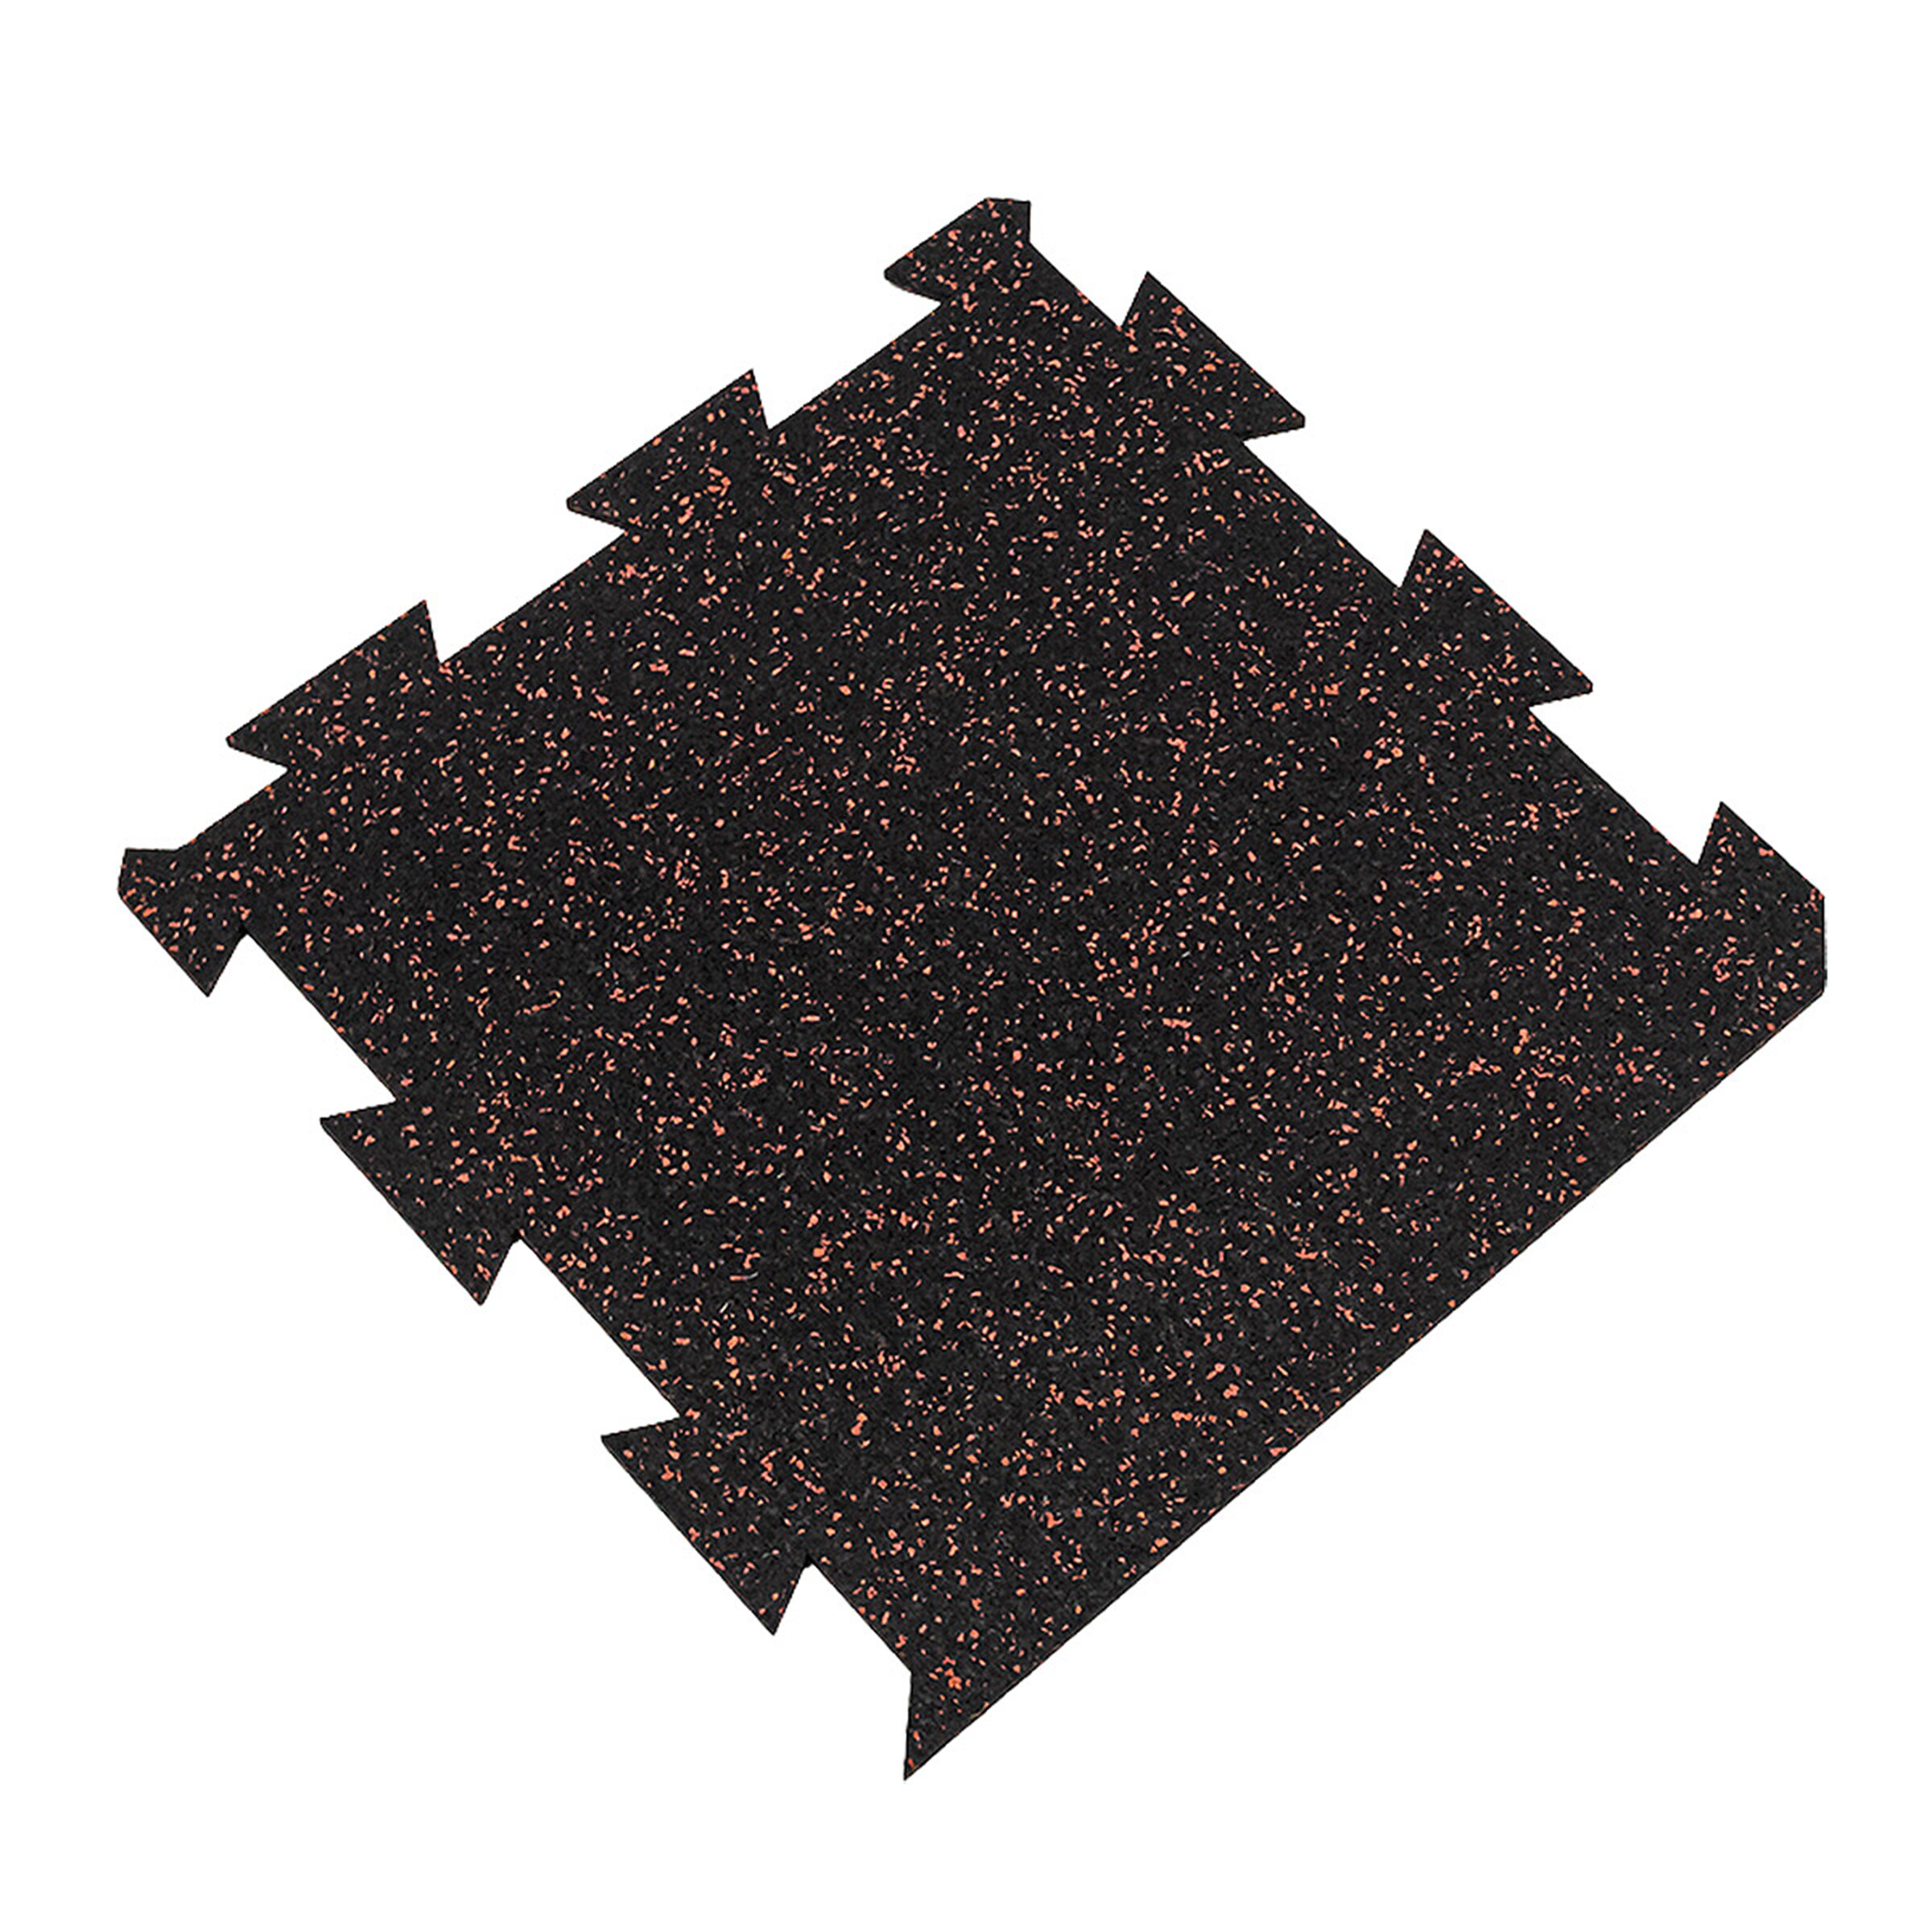 Černo-červená gumová puzzle modulová dlažba FLOMA SF1050 FitFlo - délka 50 cm, šířka 50 cm, výška 1,6 cm